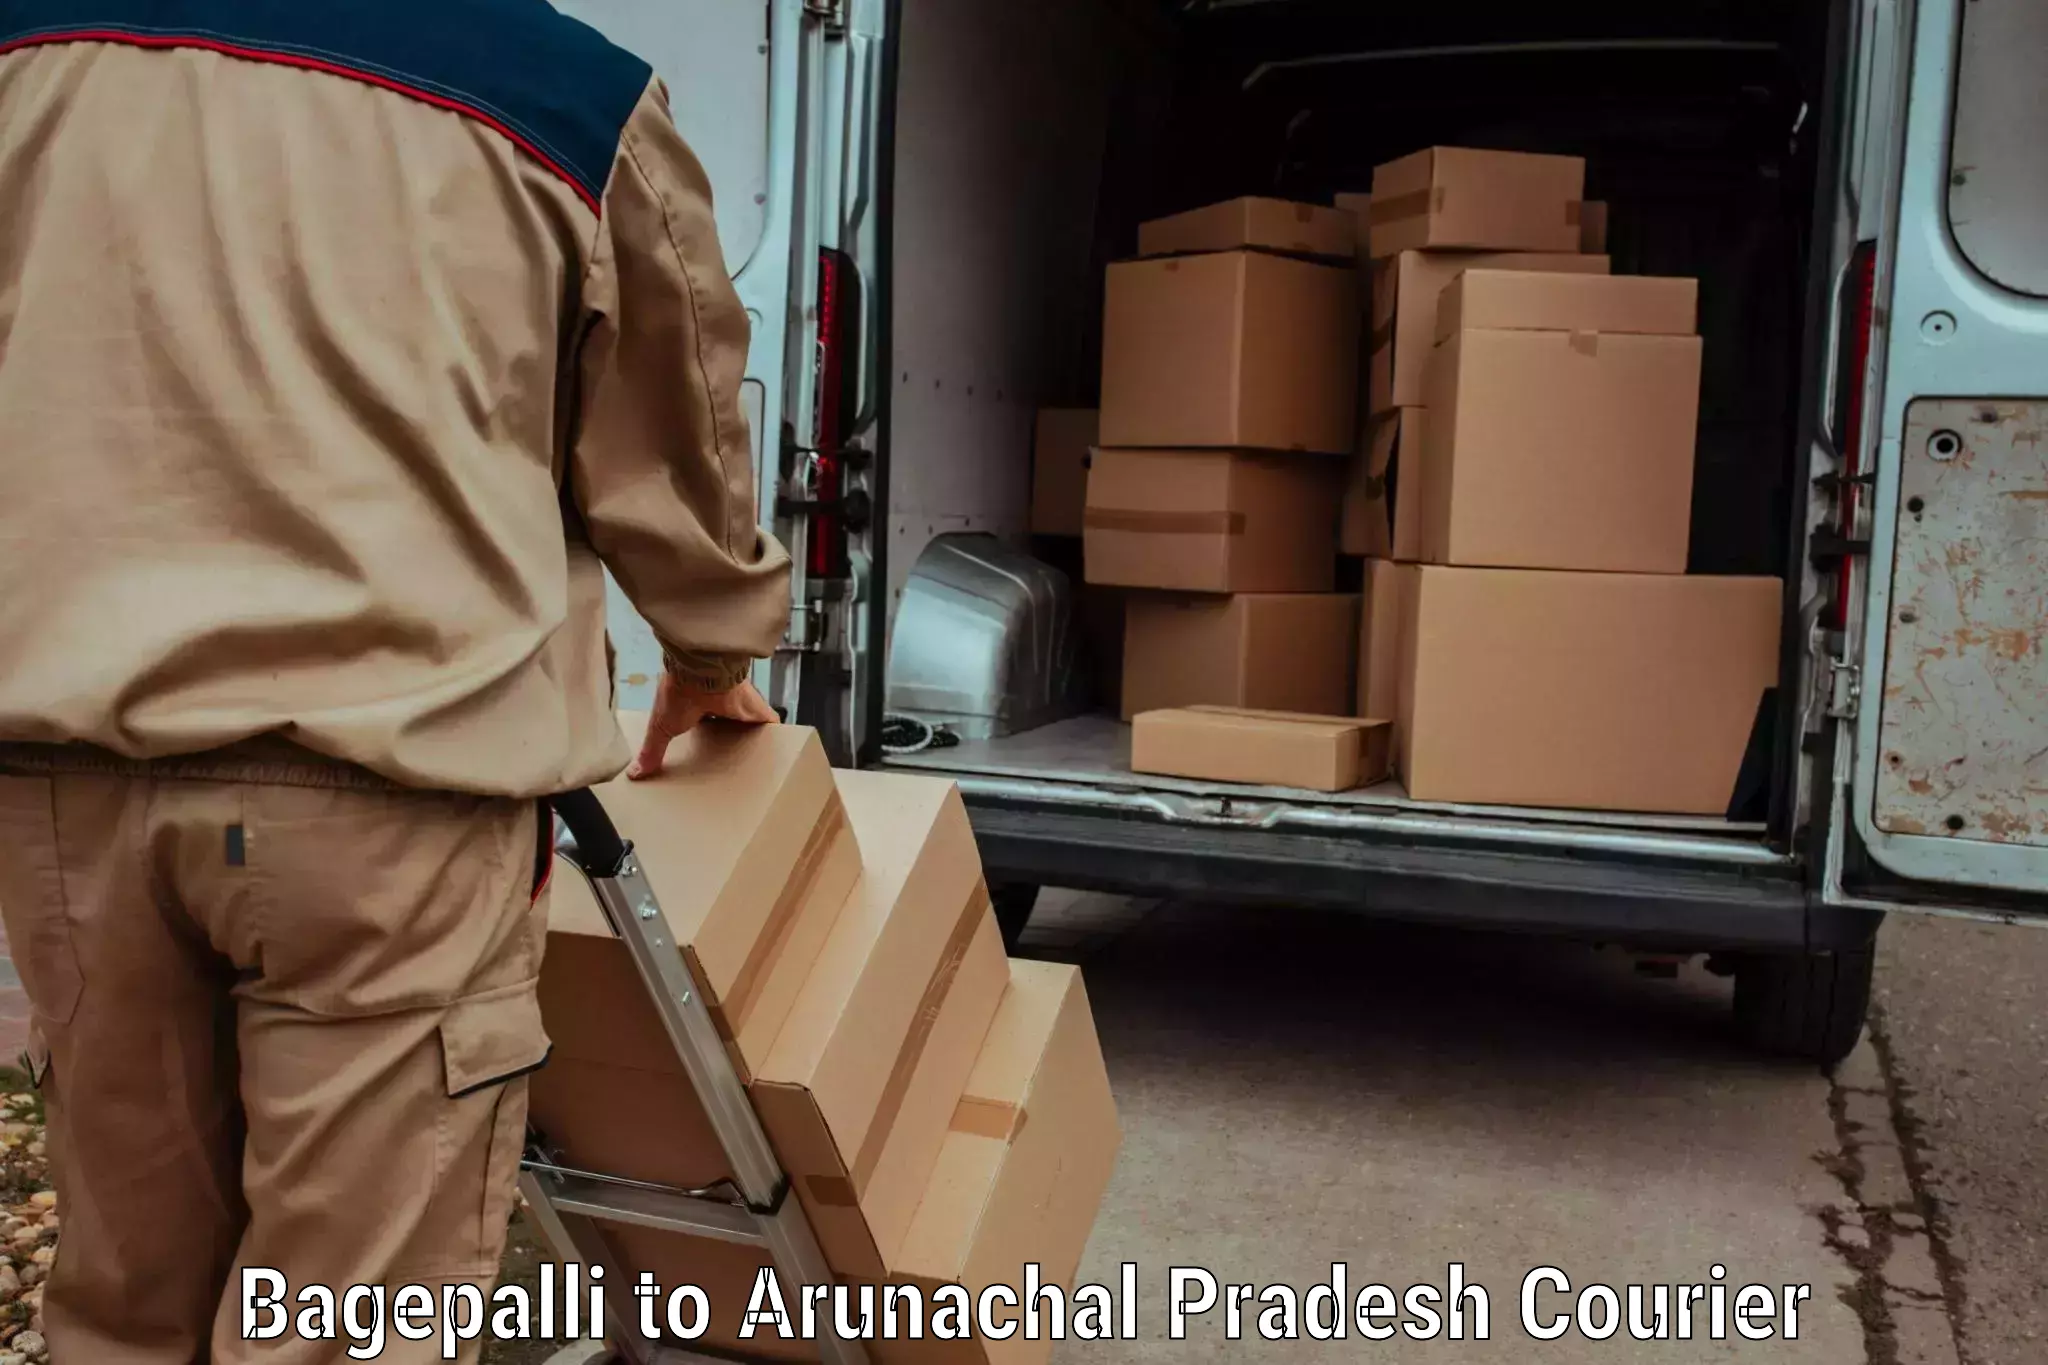 Express postal services Bagepalli to Arunachal Pradesh